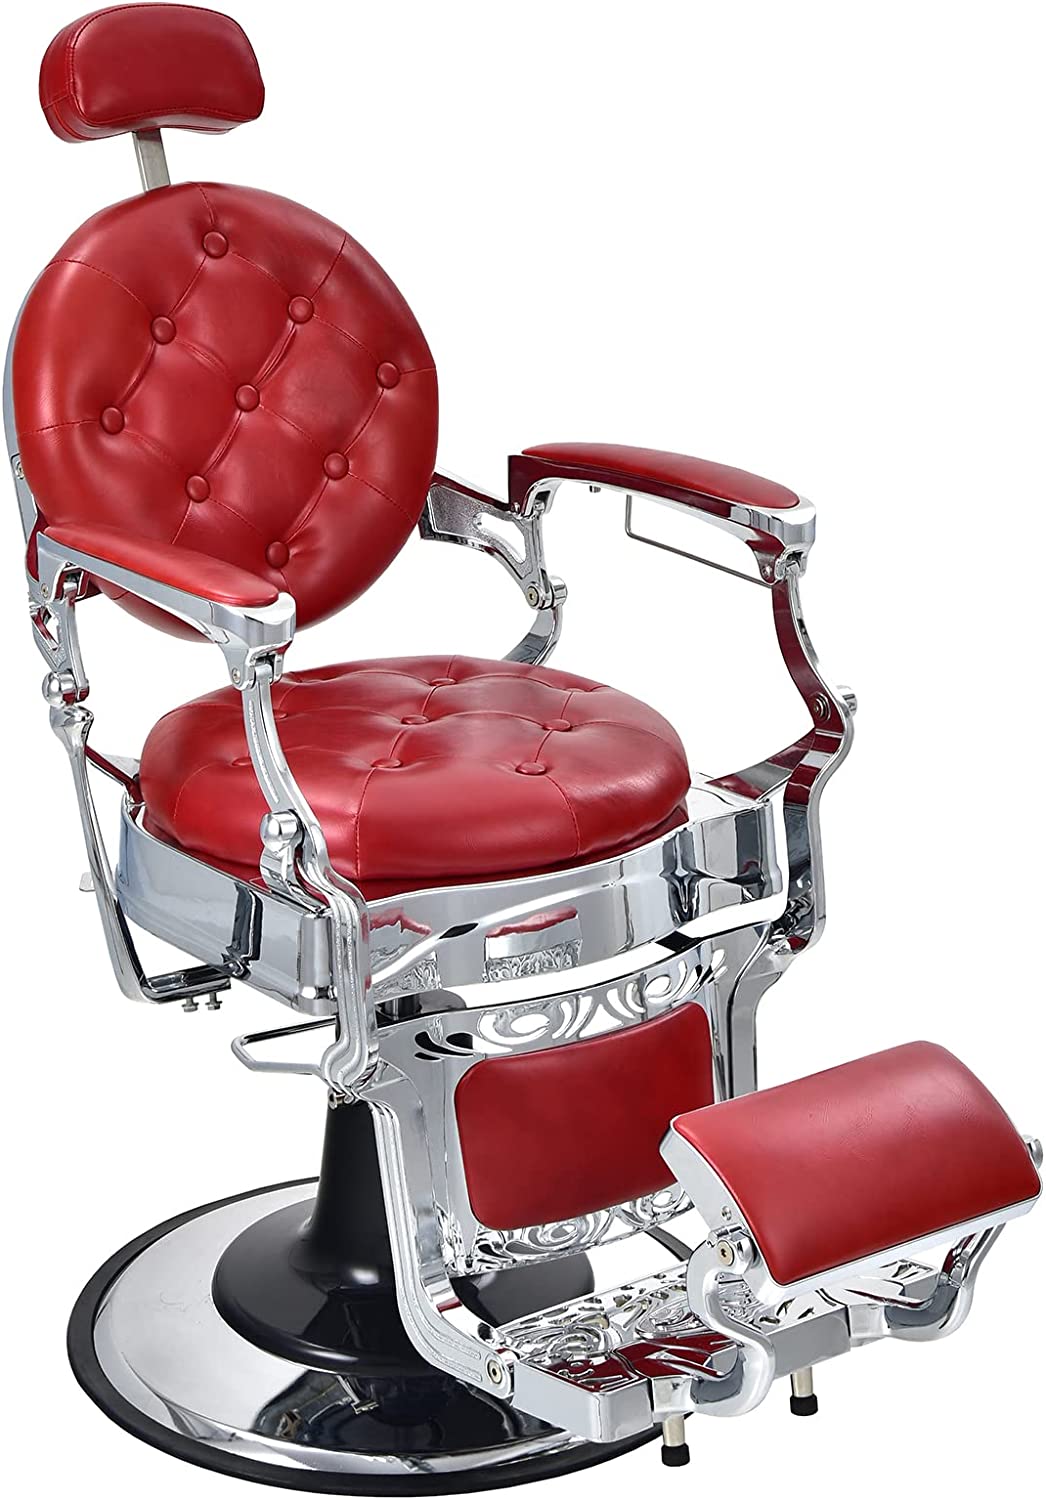 Silla de peluquero vintage, silla reclinable giratoria de 360°, sillas de peluquería con altura ajustable y reposacabezas desmontable